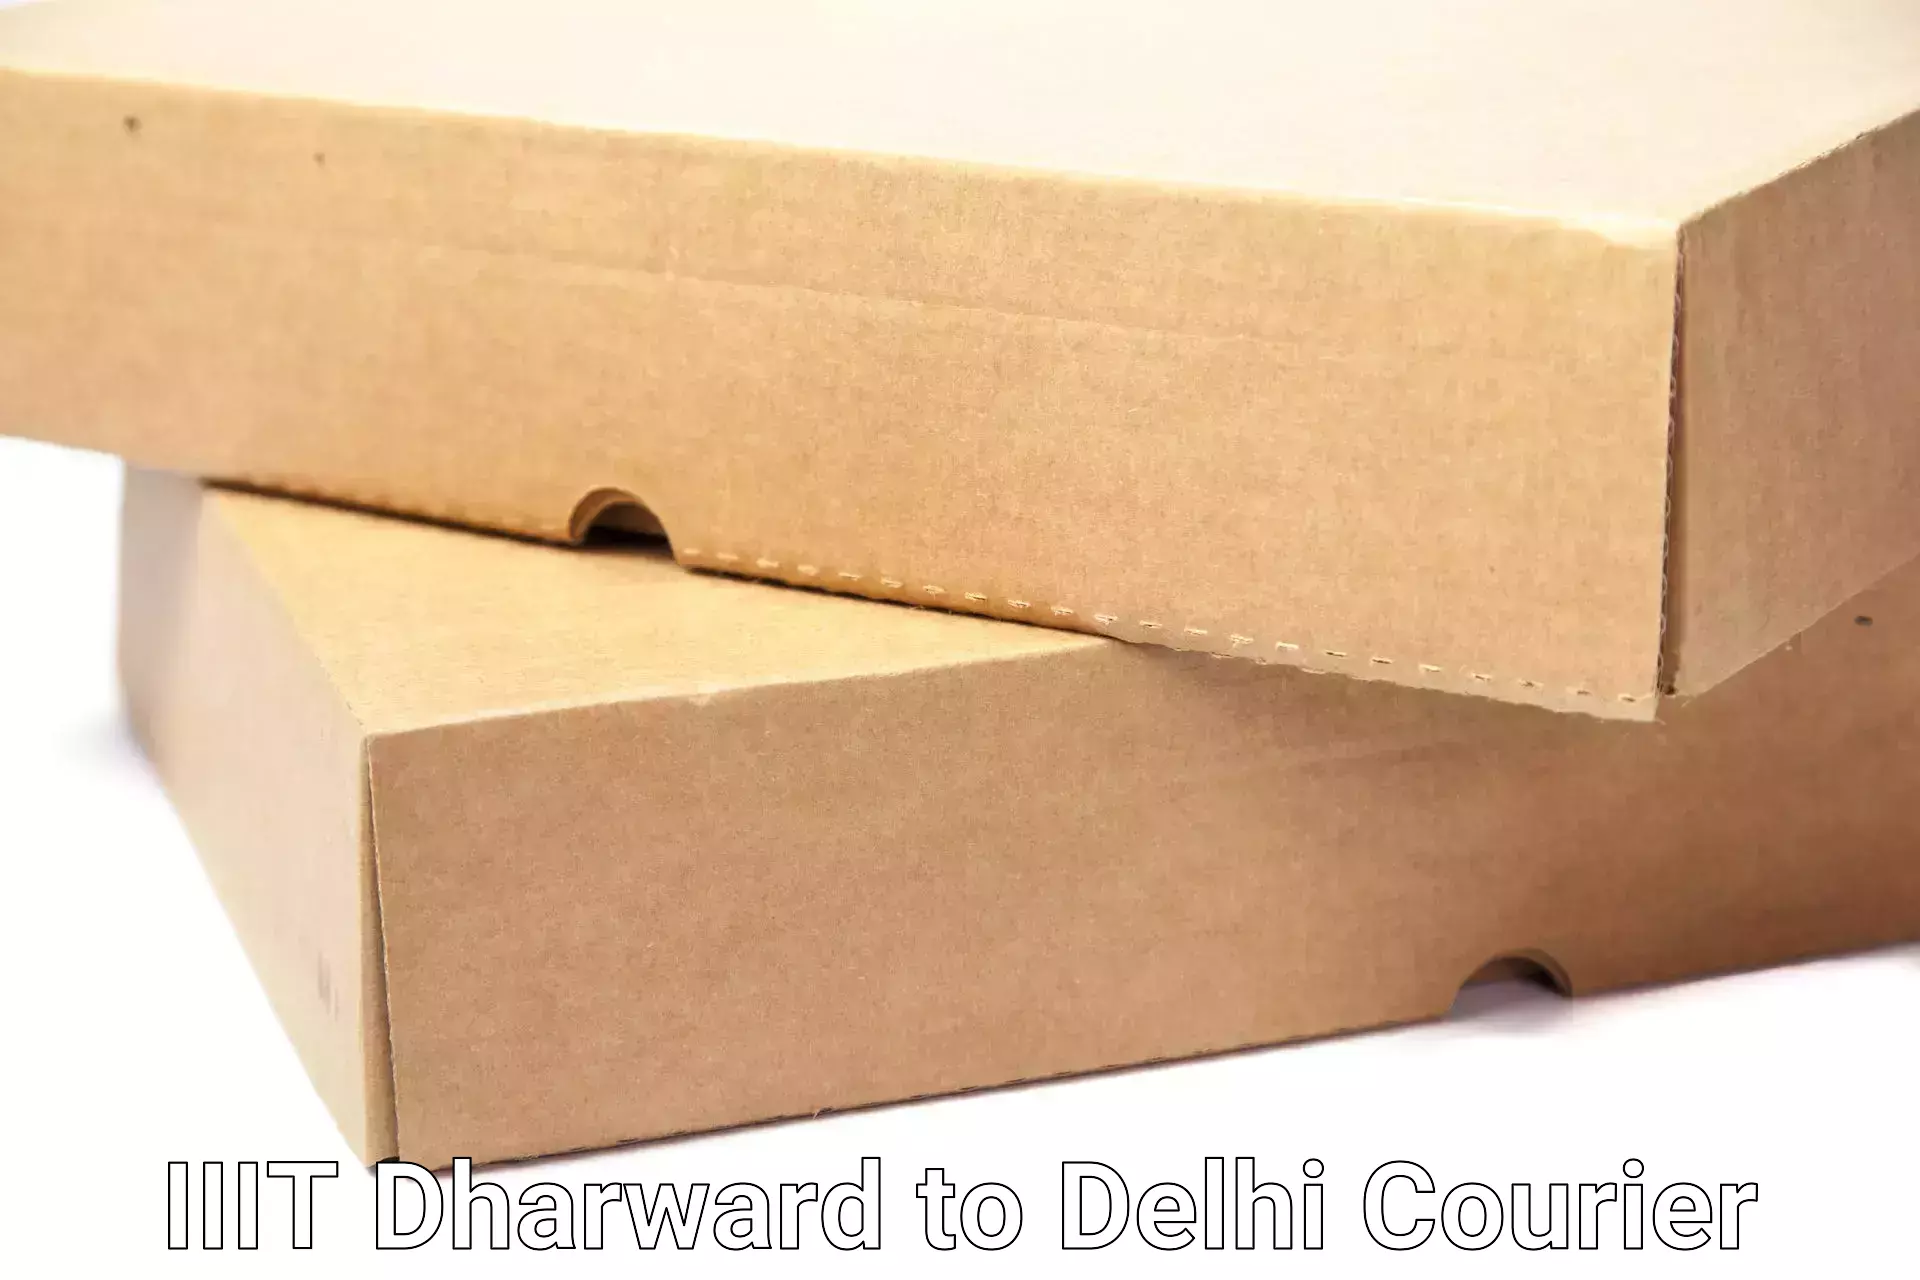 Smooth moving experience IIIT Dharward to Jamia Hamdard New Delhi